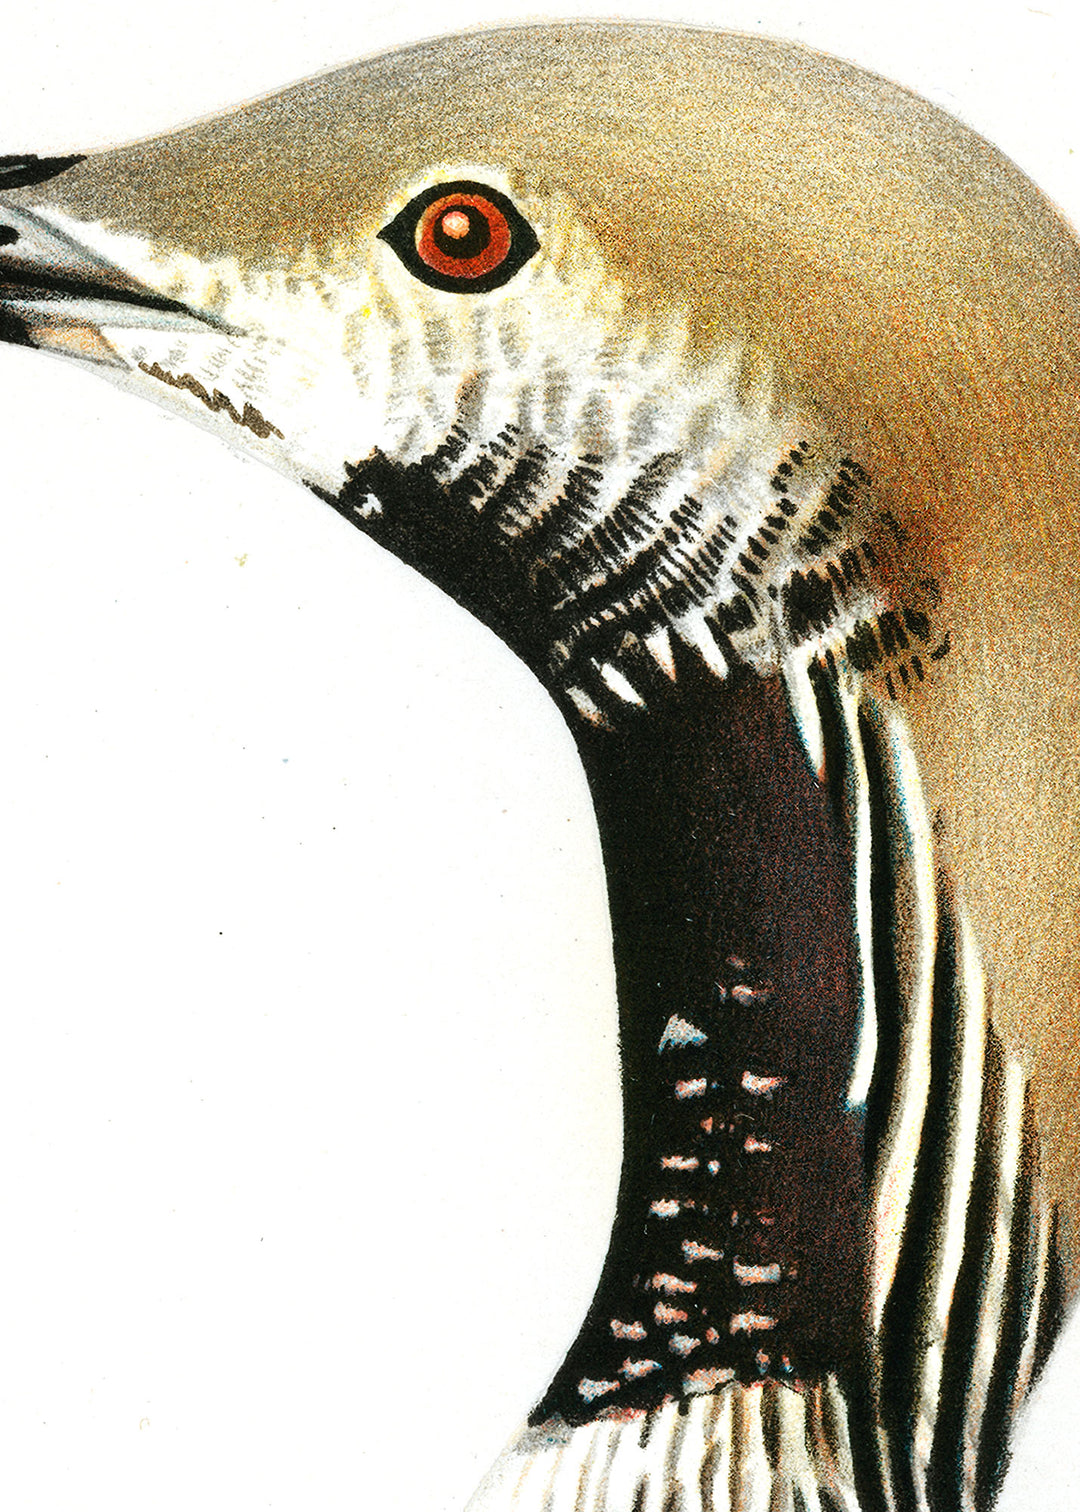 Fågeln Storlom, övergångsdräkt på klassisk vintage poster/affisch